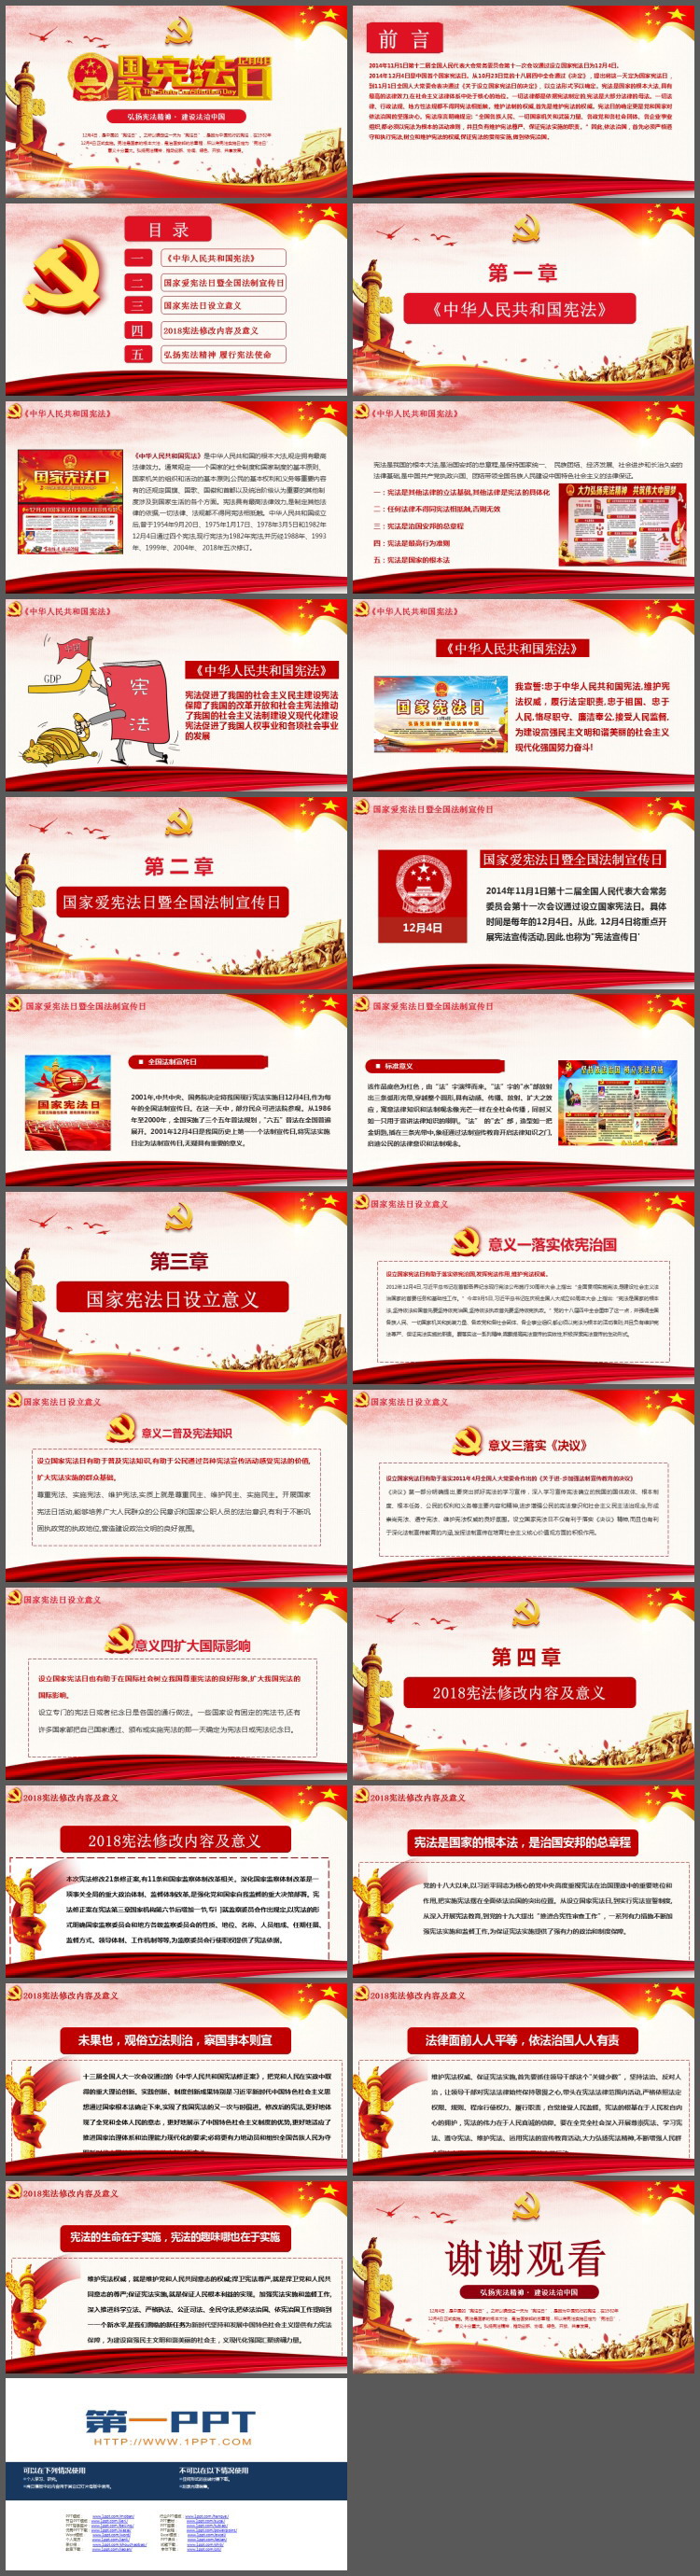 《弘扬宪法精神建设法治中国》国家宪法日PPT模板